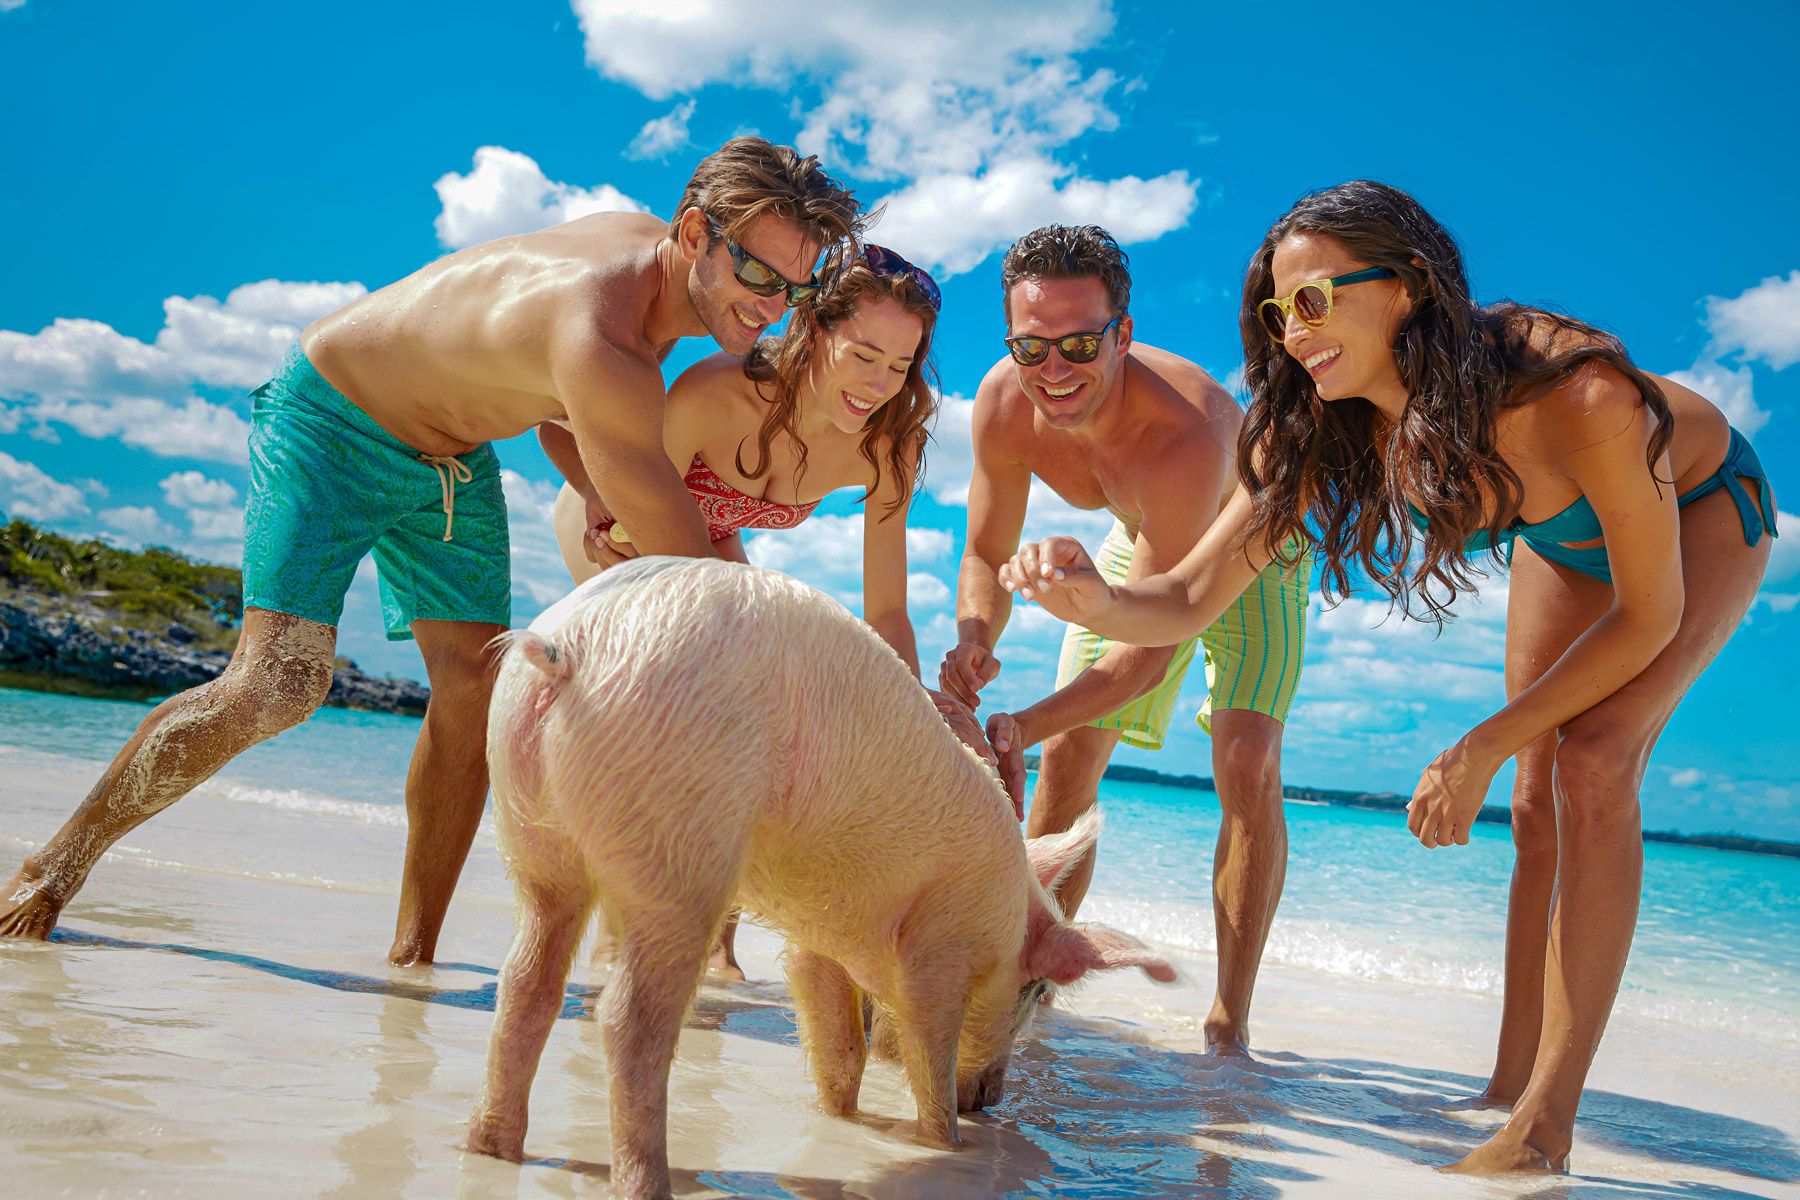 Pig Island Group Tour Bahamas